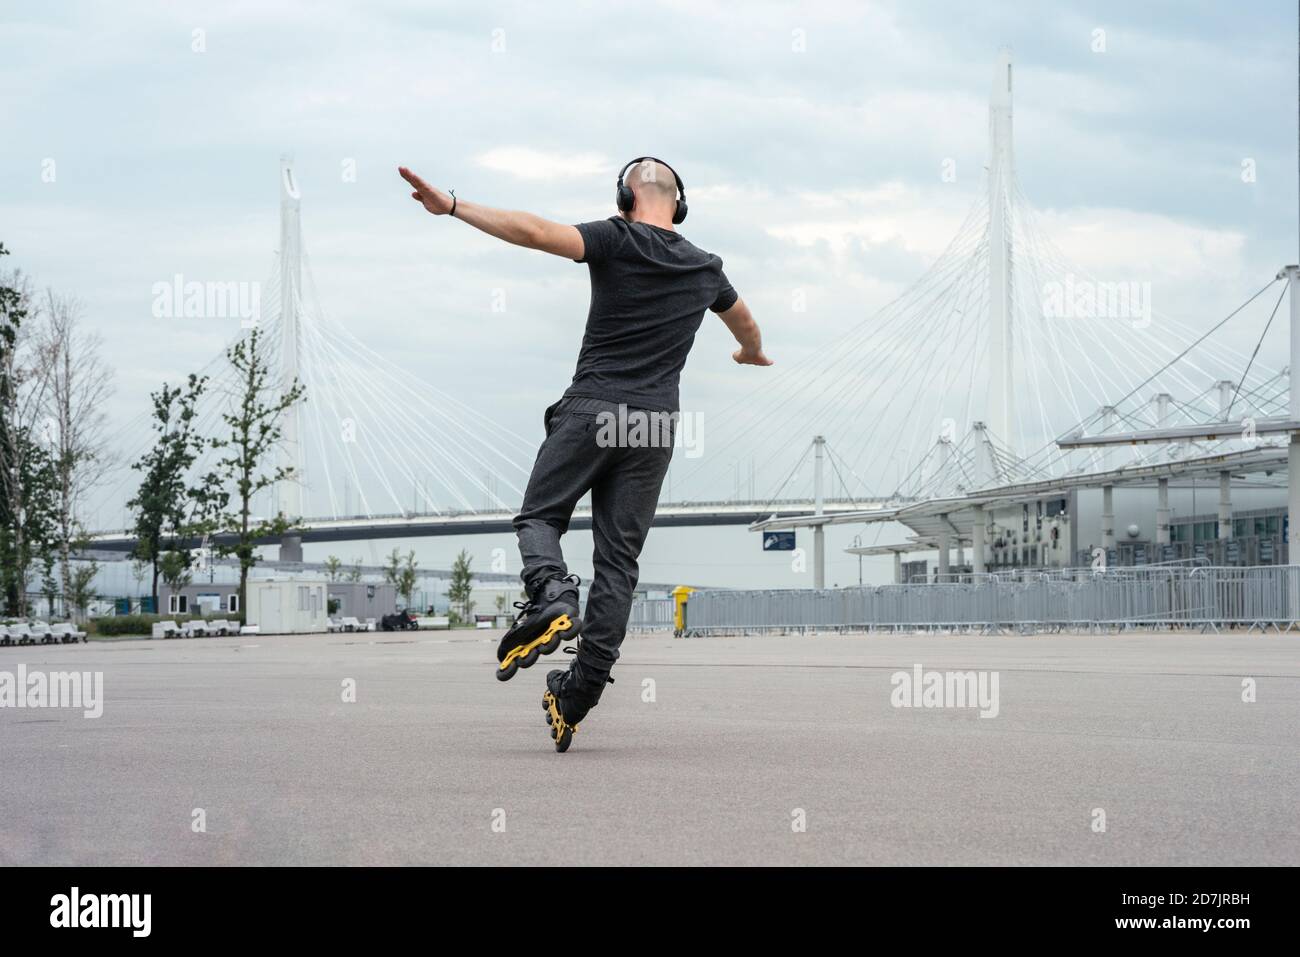 Junger Mann mit ausgestreckten Armen hört Musik beim Inline-Skaten Auf der Straße Stockfoto